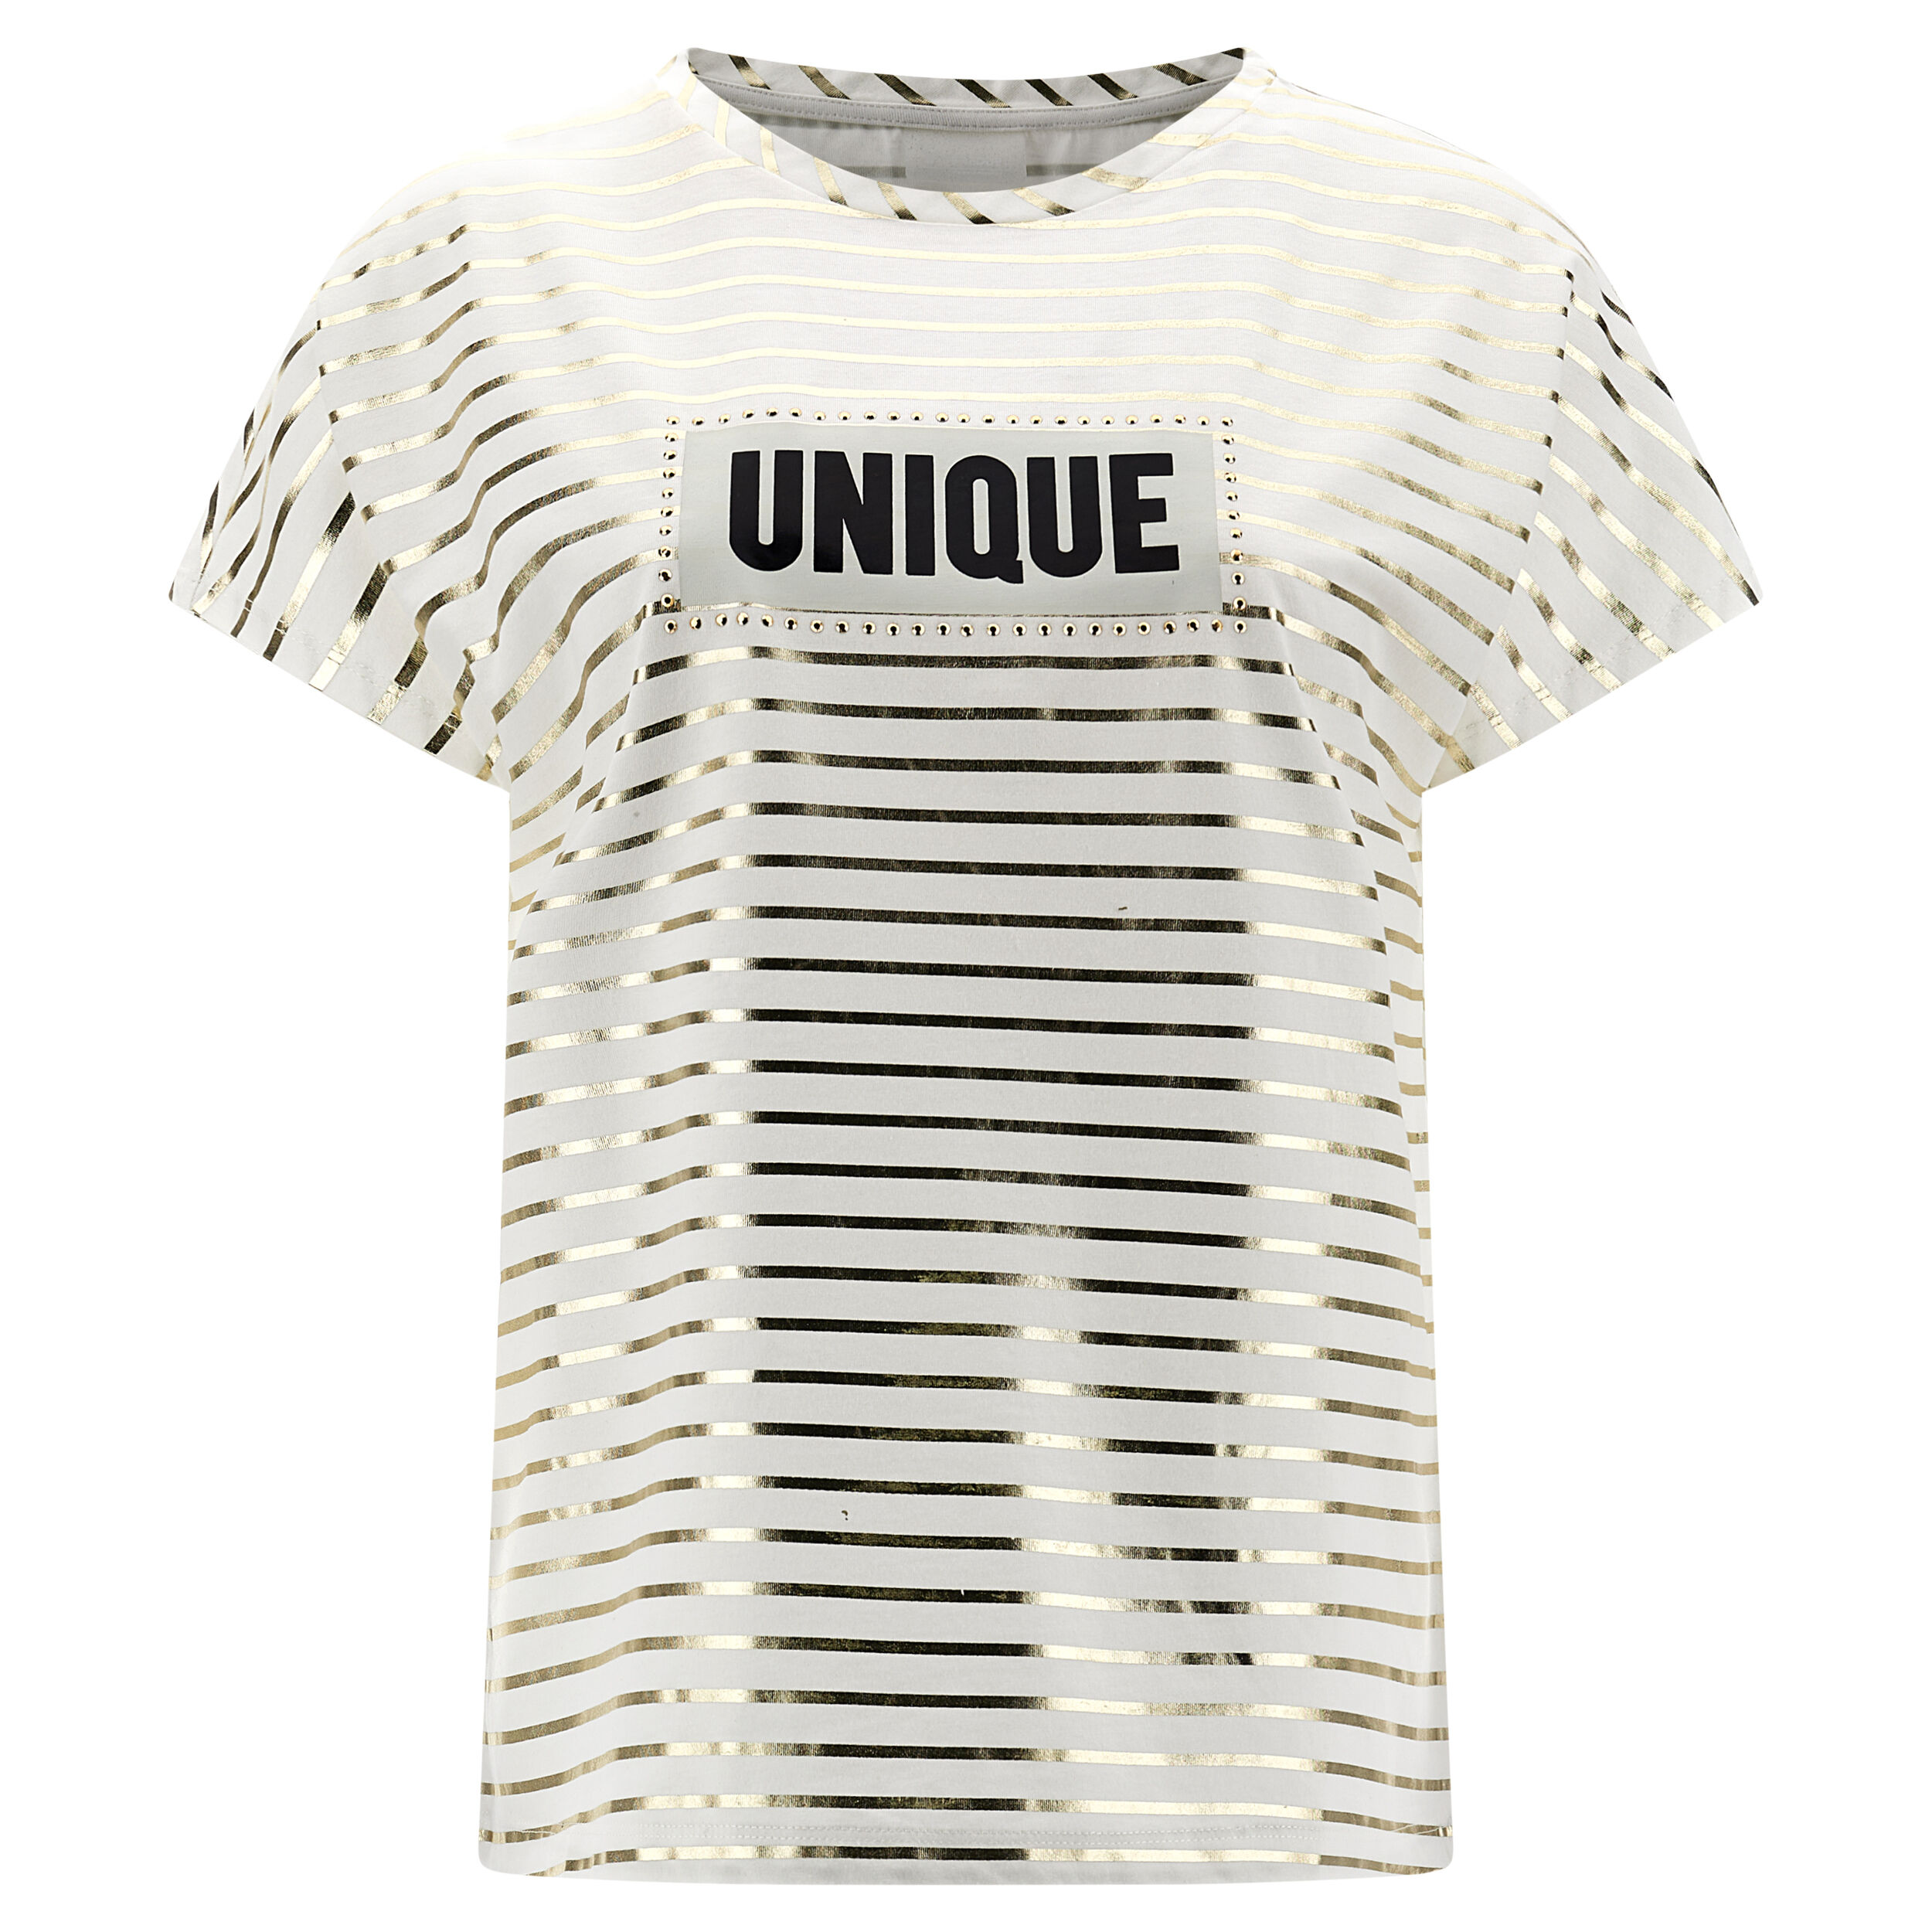 Freddy T-shirt a righe e stampa UNIQUE lucida con bordo in strass Star White -Stripes Gold Donna Medium